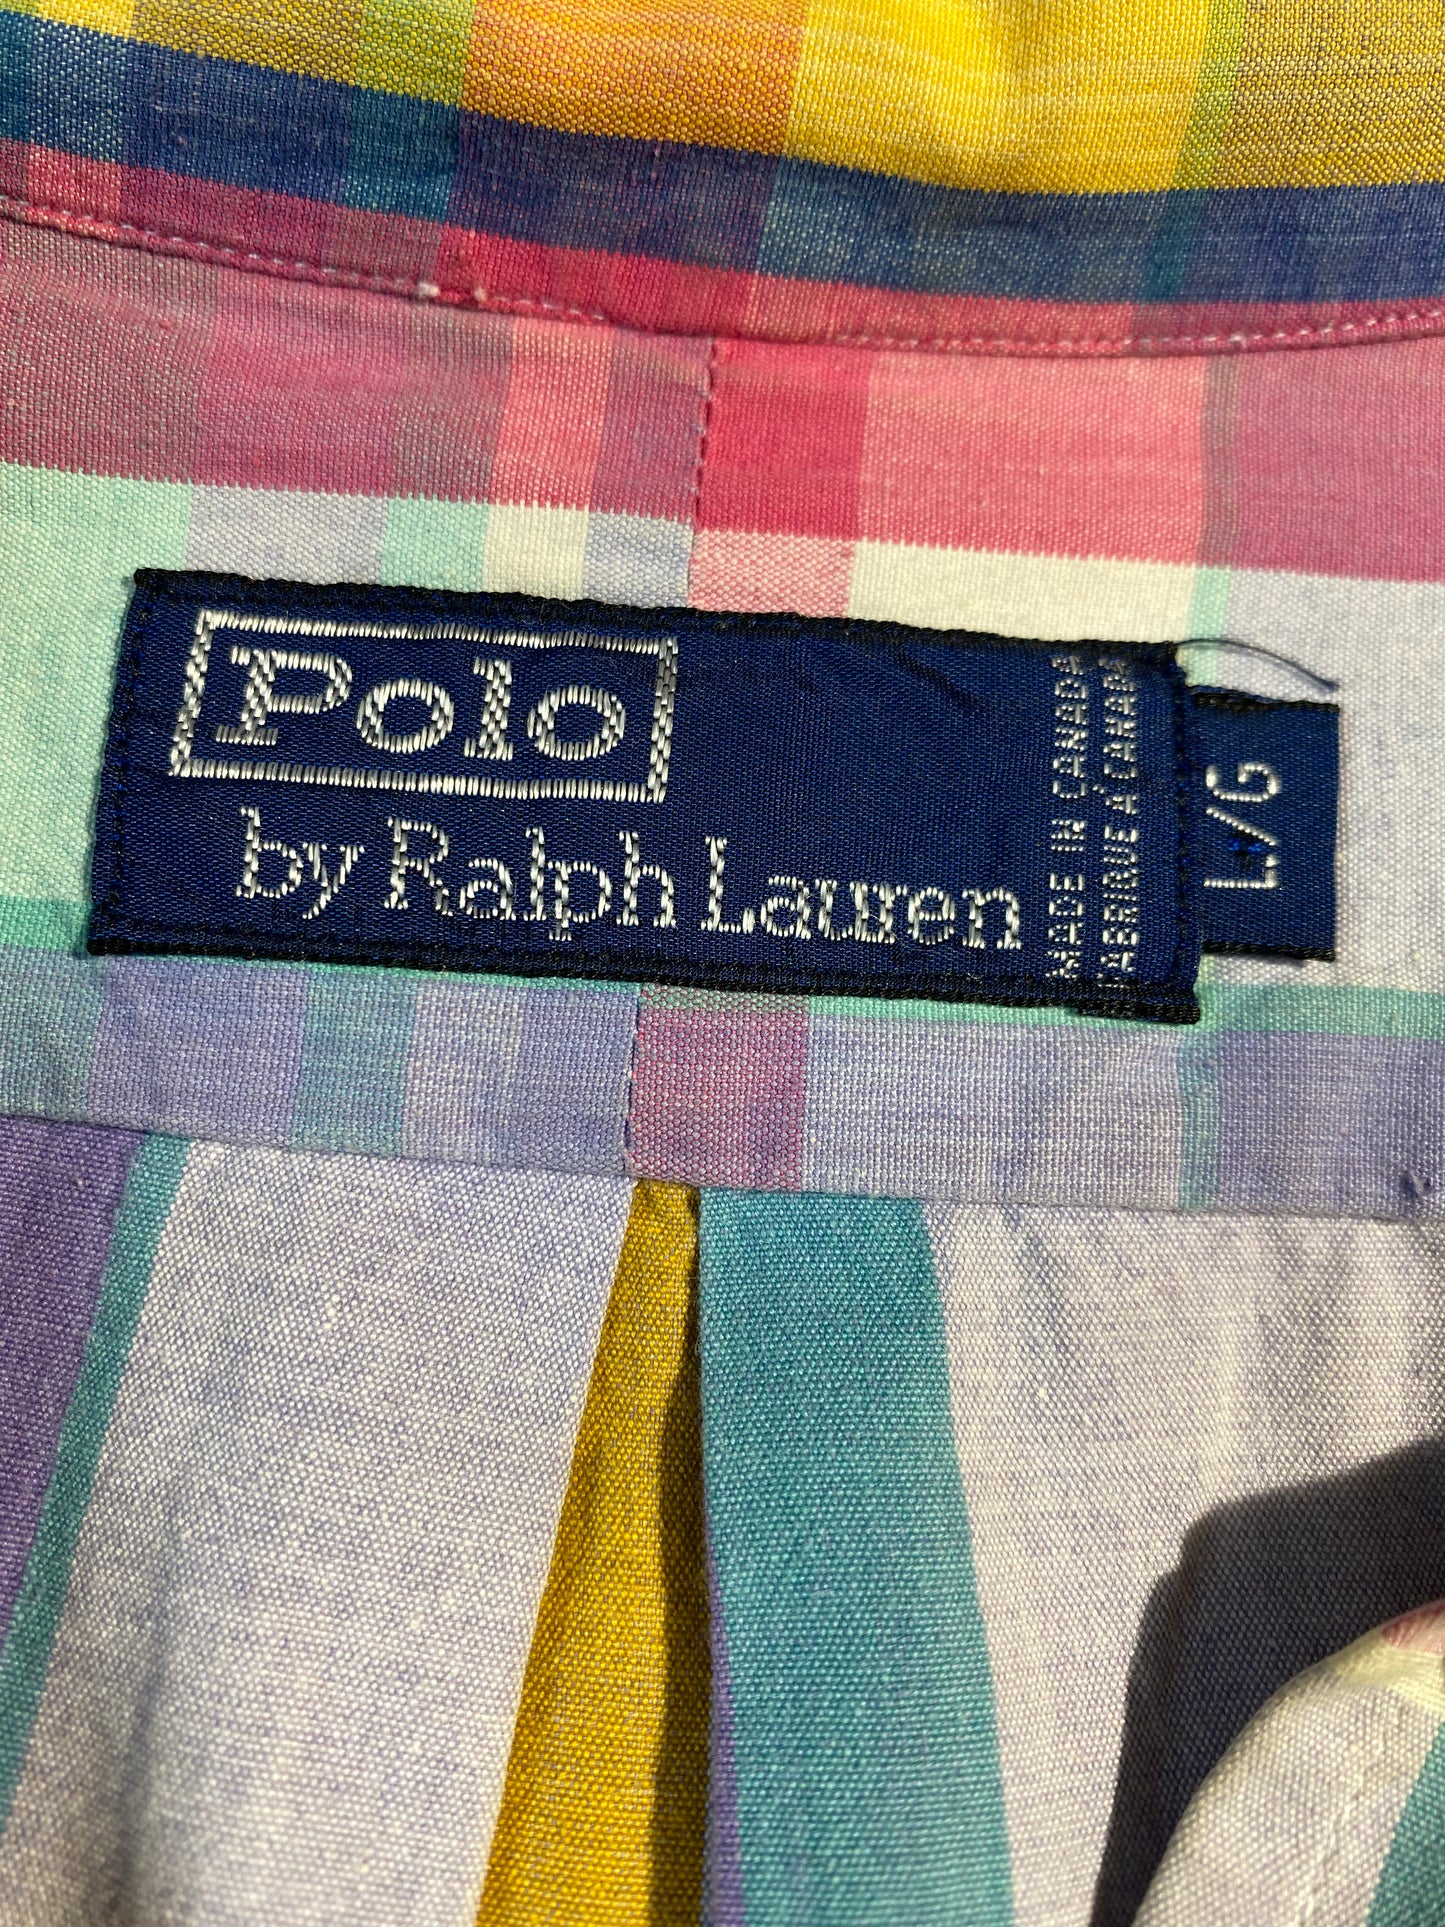 Vintage Ralph Lauren POLO Summer Shirt Top Button Up